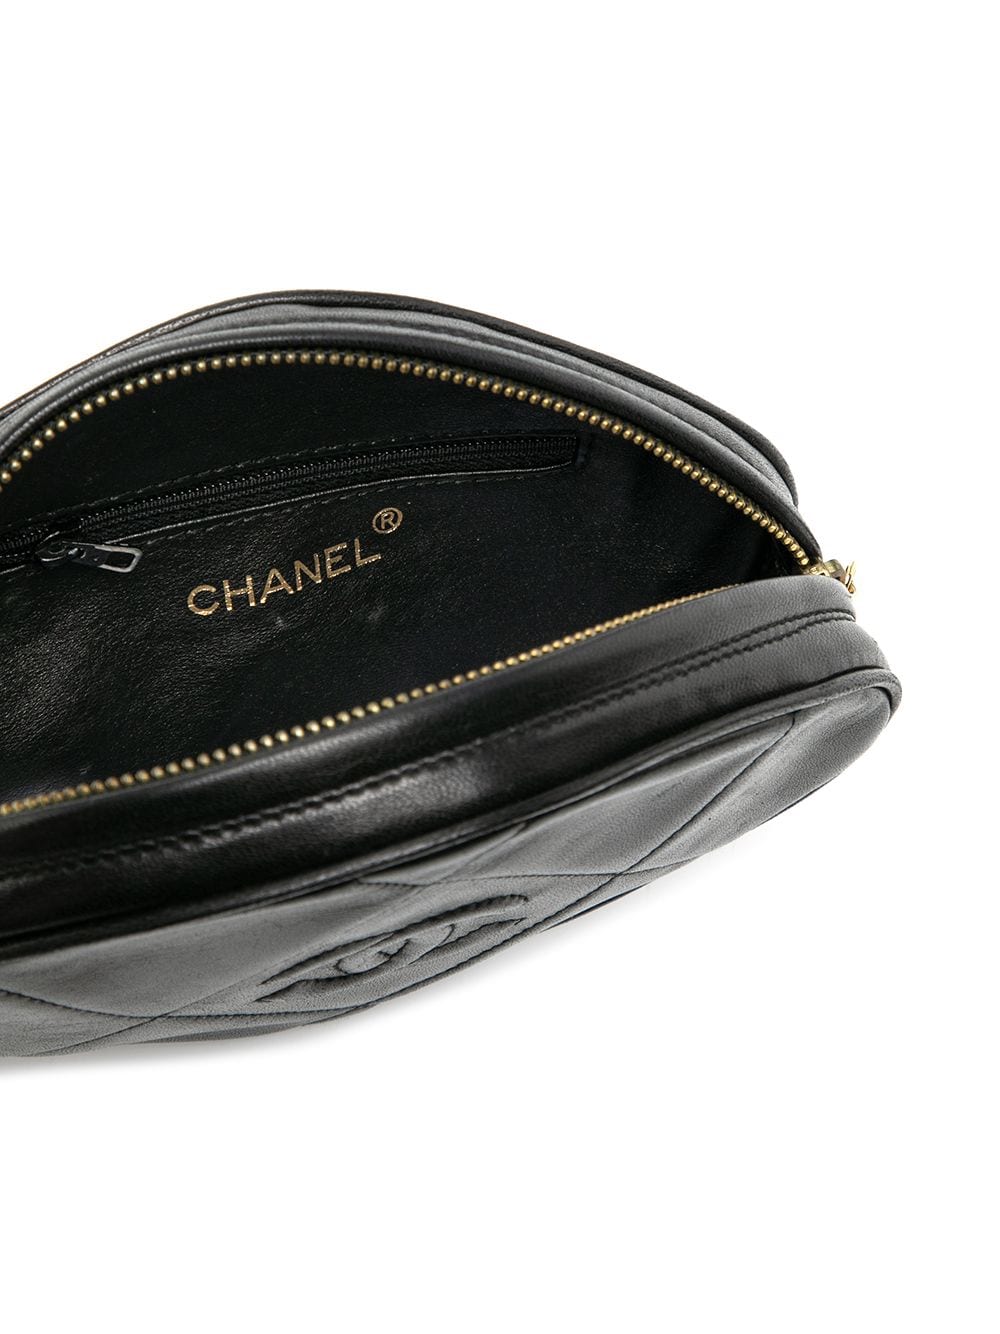 фото Chanel pre-owned стеганый клатч 1990-х годов с кисточкой